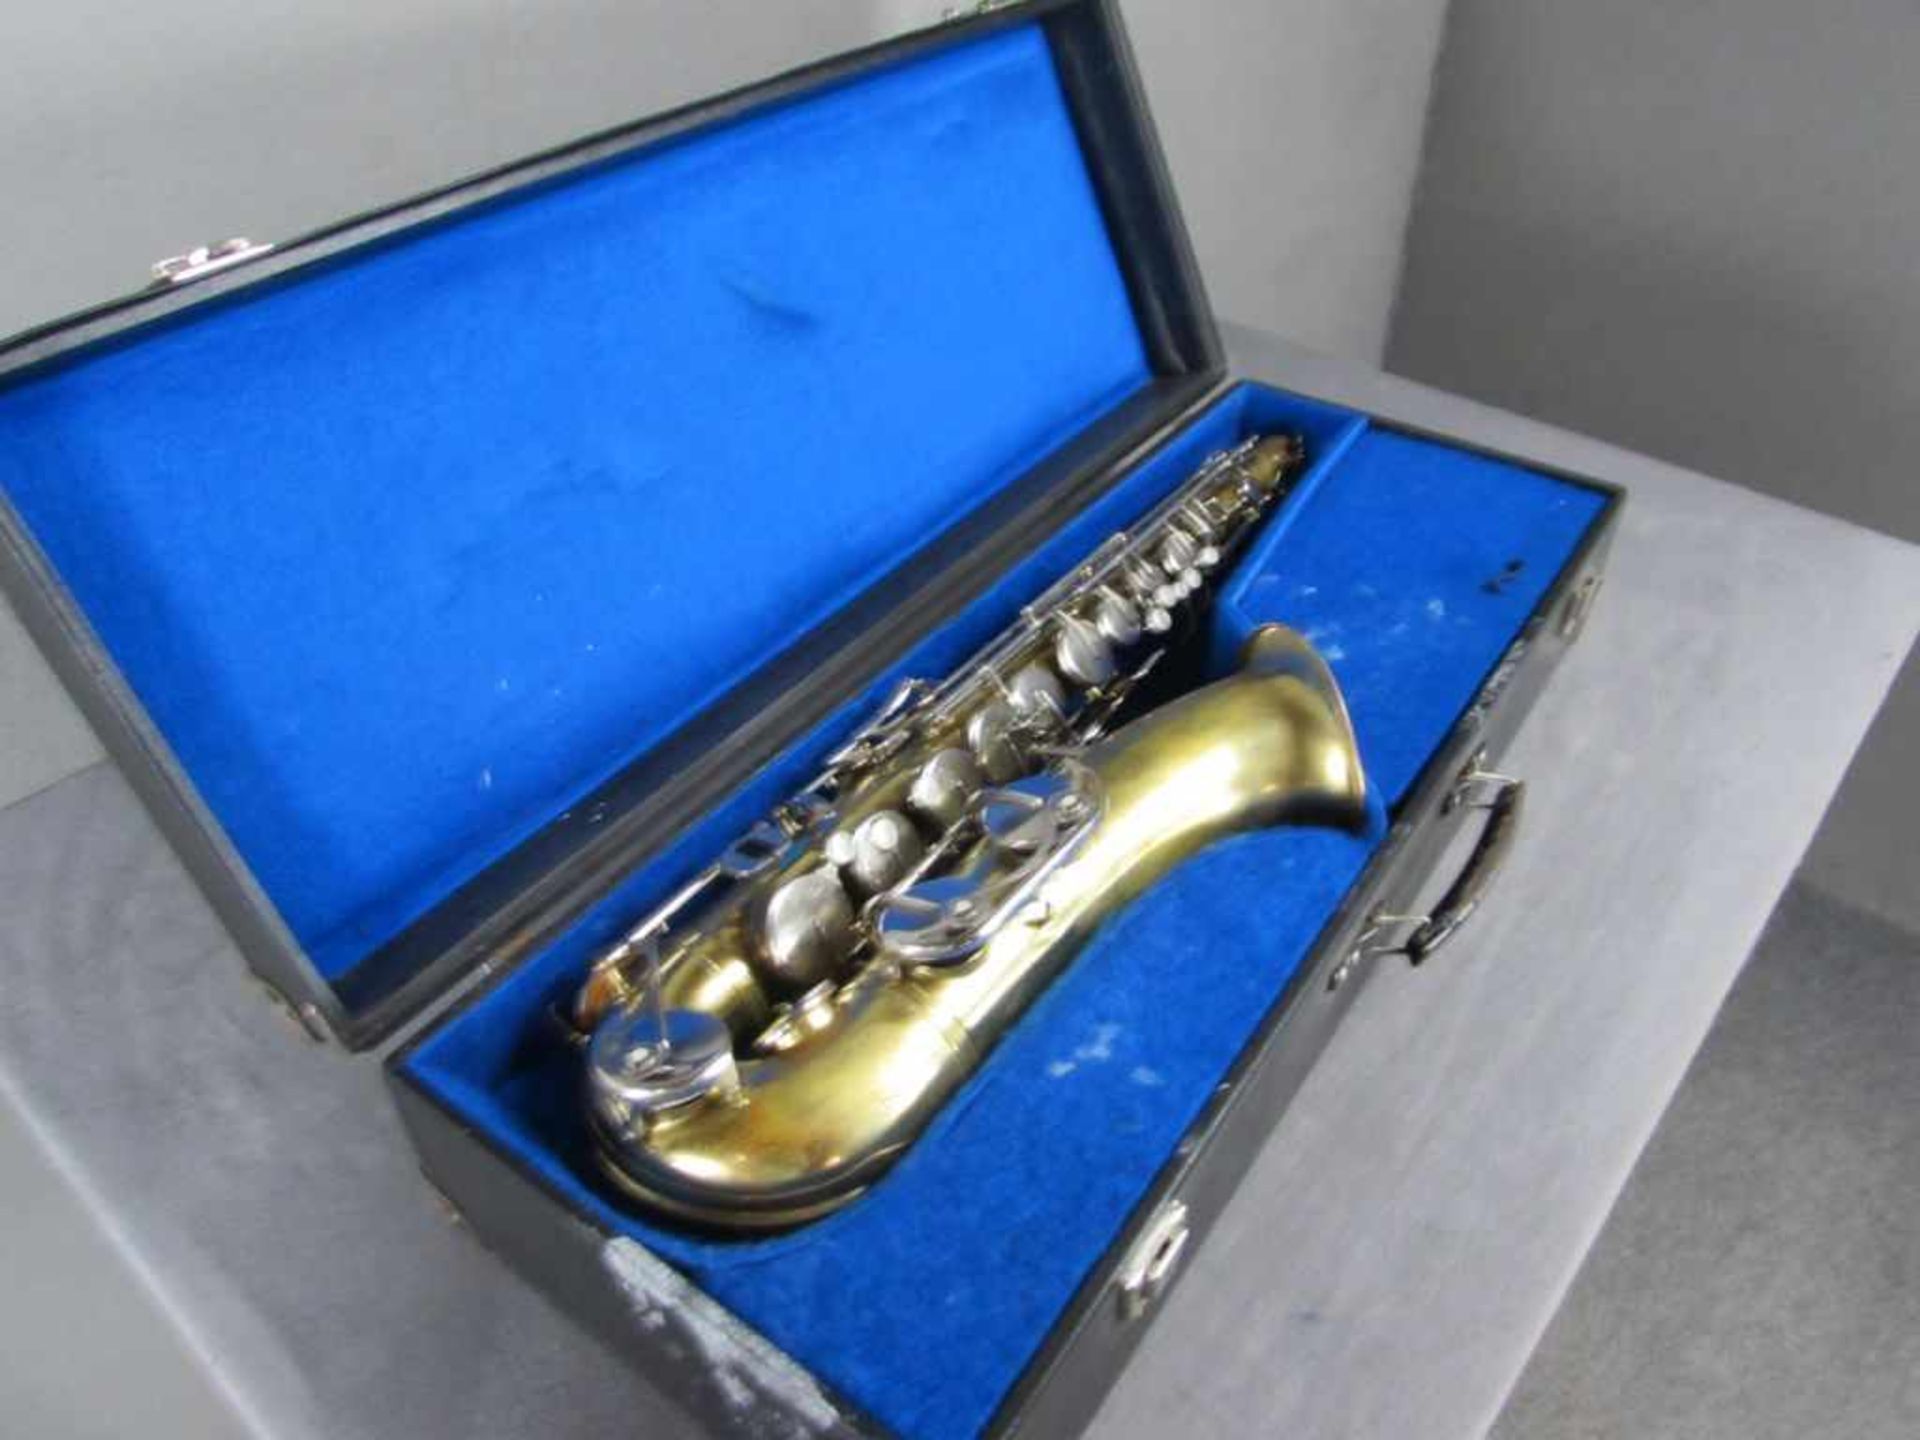 Saxophon komplett in Tragekoffer - Bild 3 aus 4